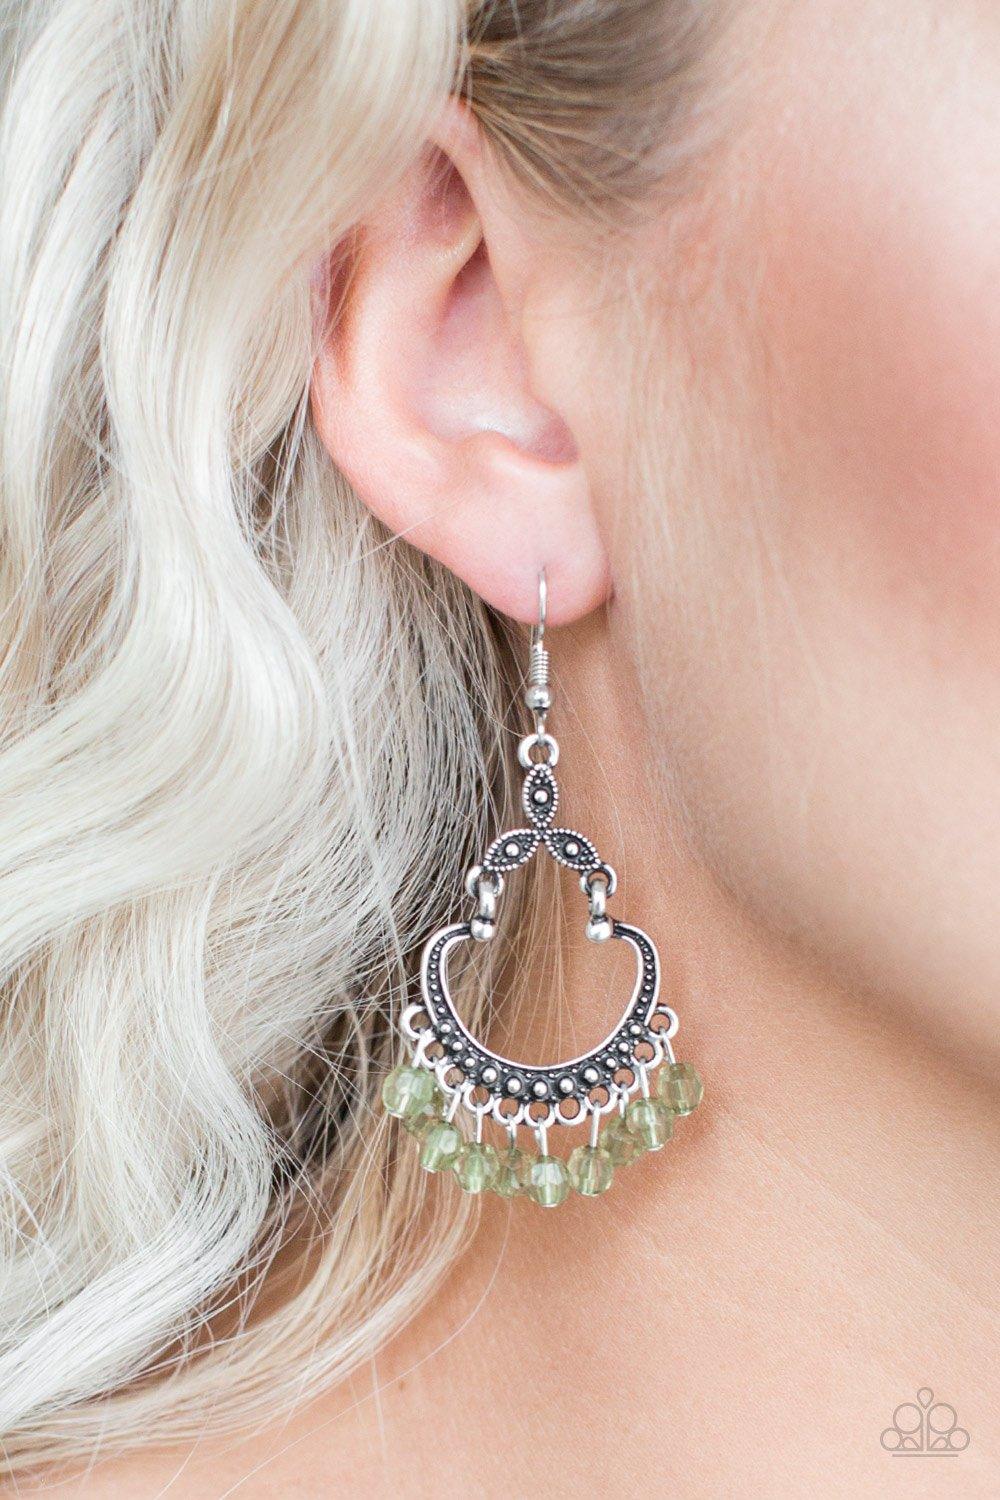 Babe Alert Green Earrings - Jewelry By Bretta - Jewelry by Bretta